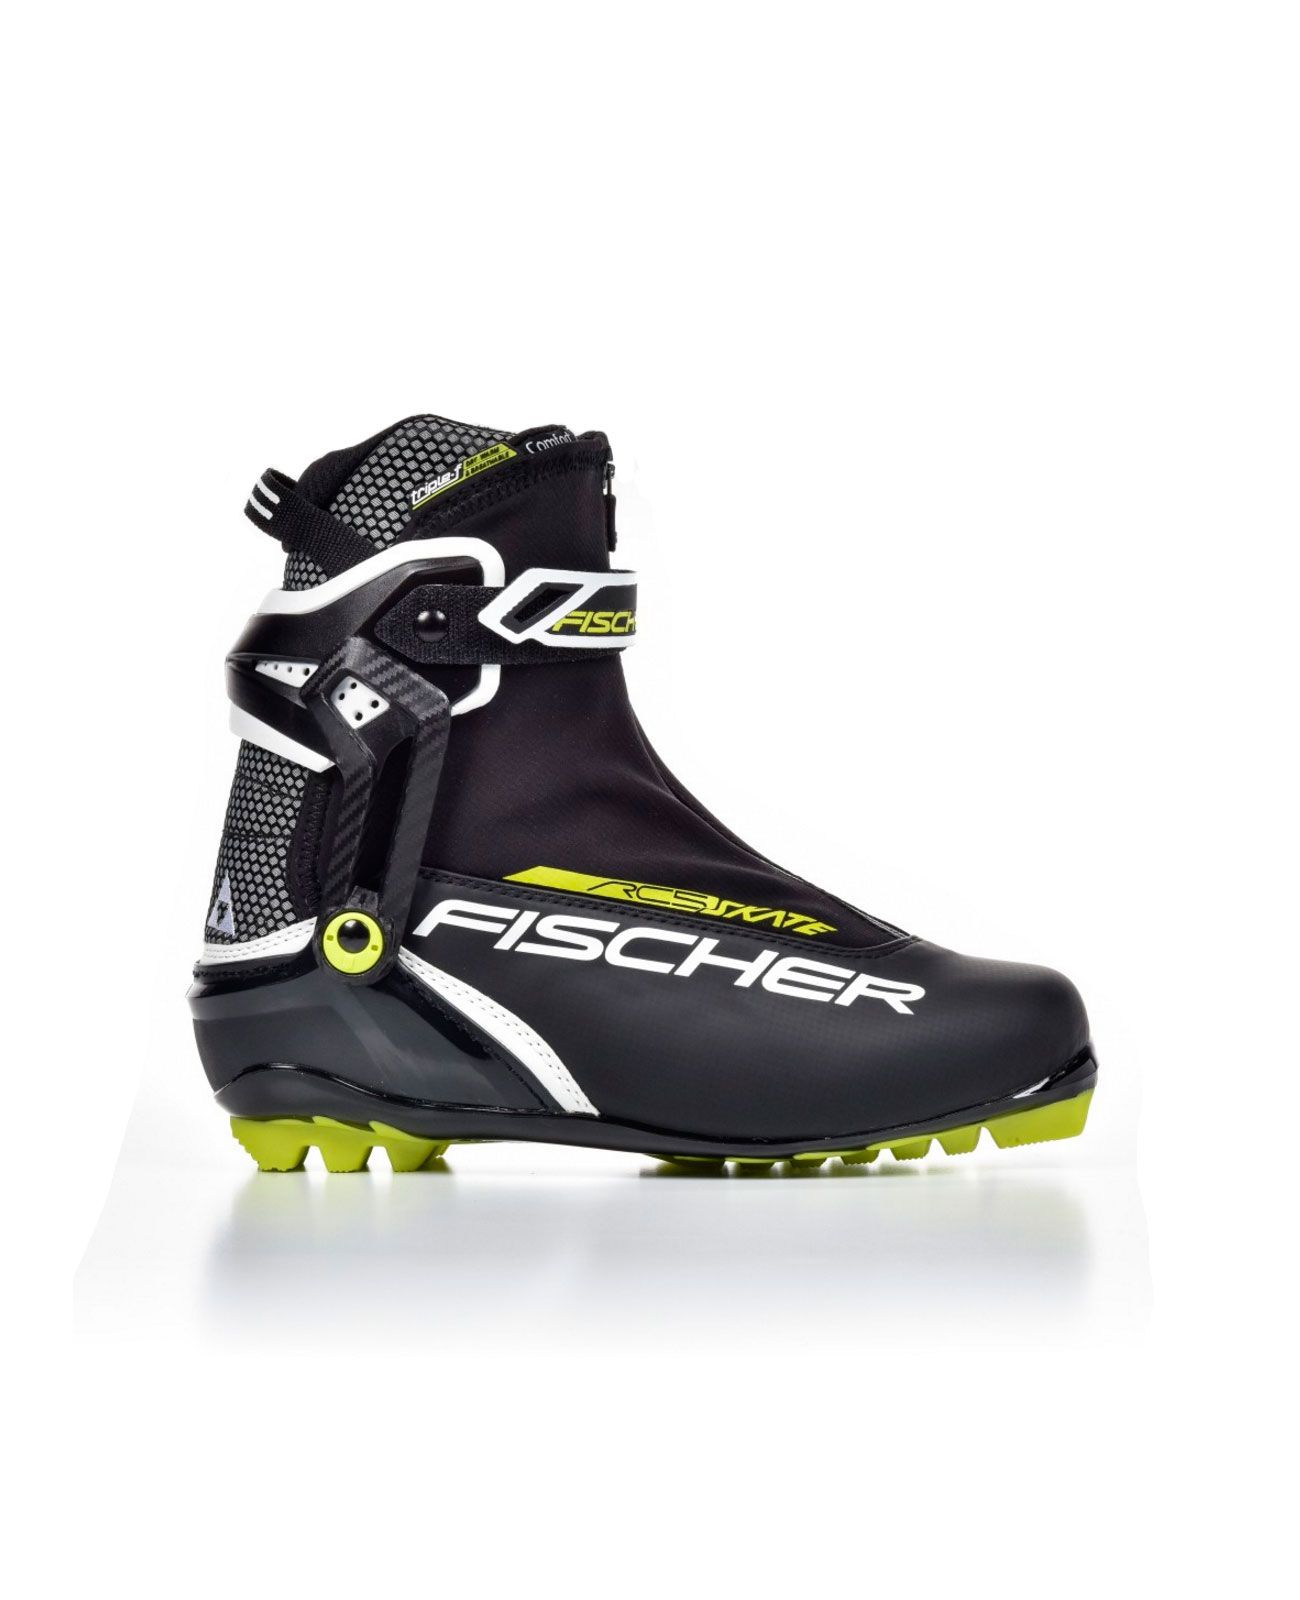 Ботинки лыжные FISCHER RC5 Skate 